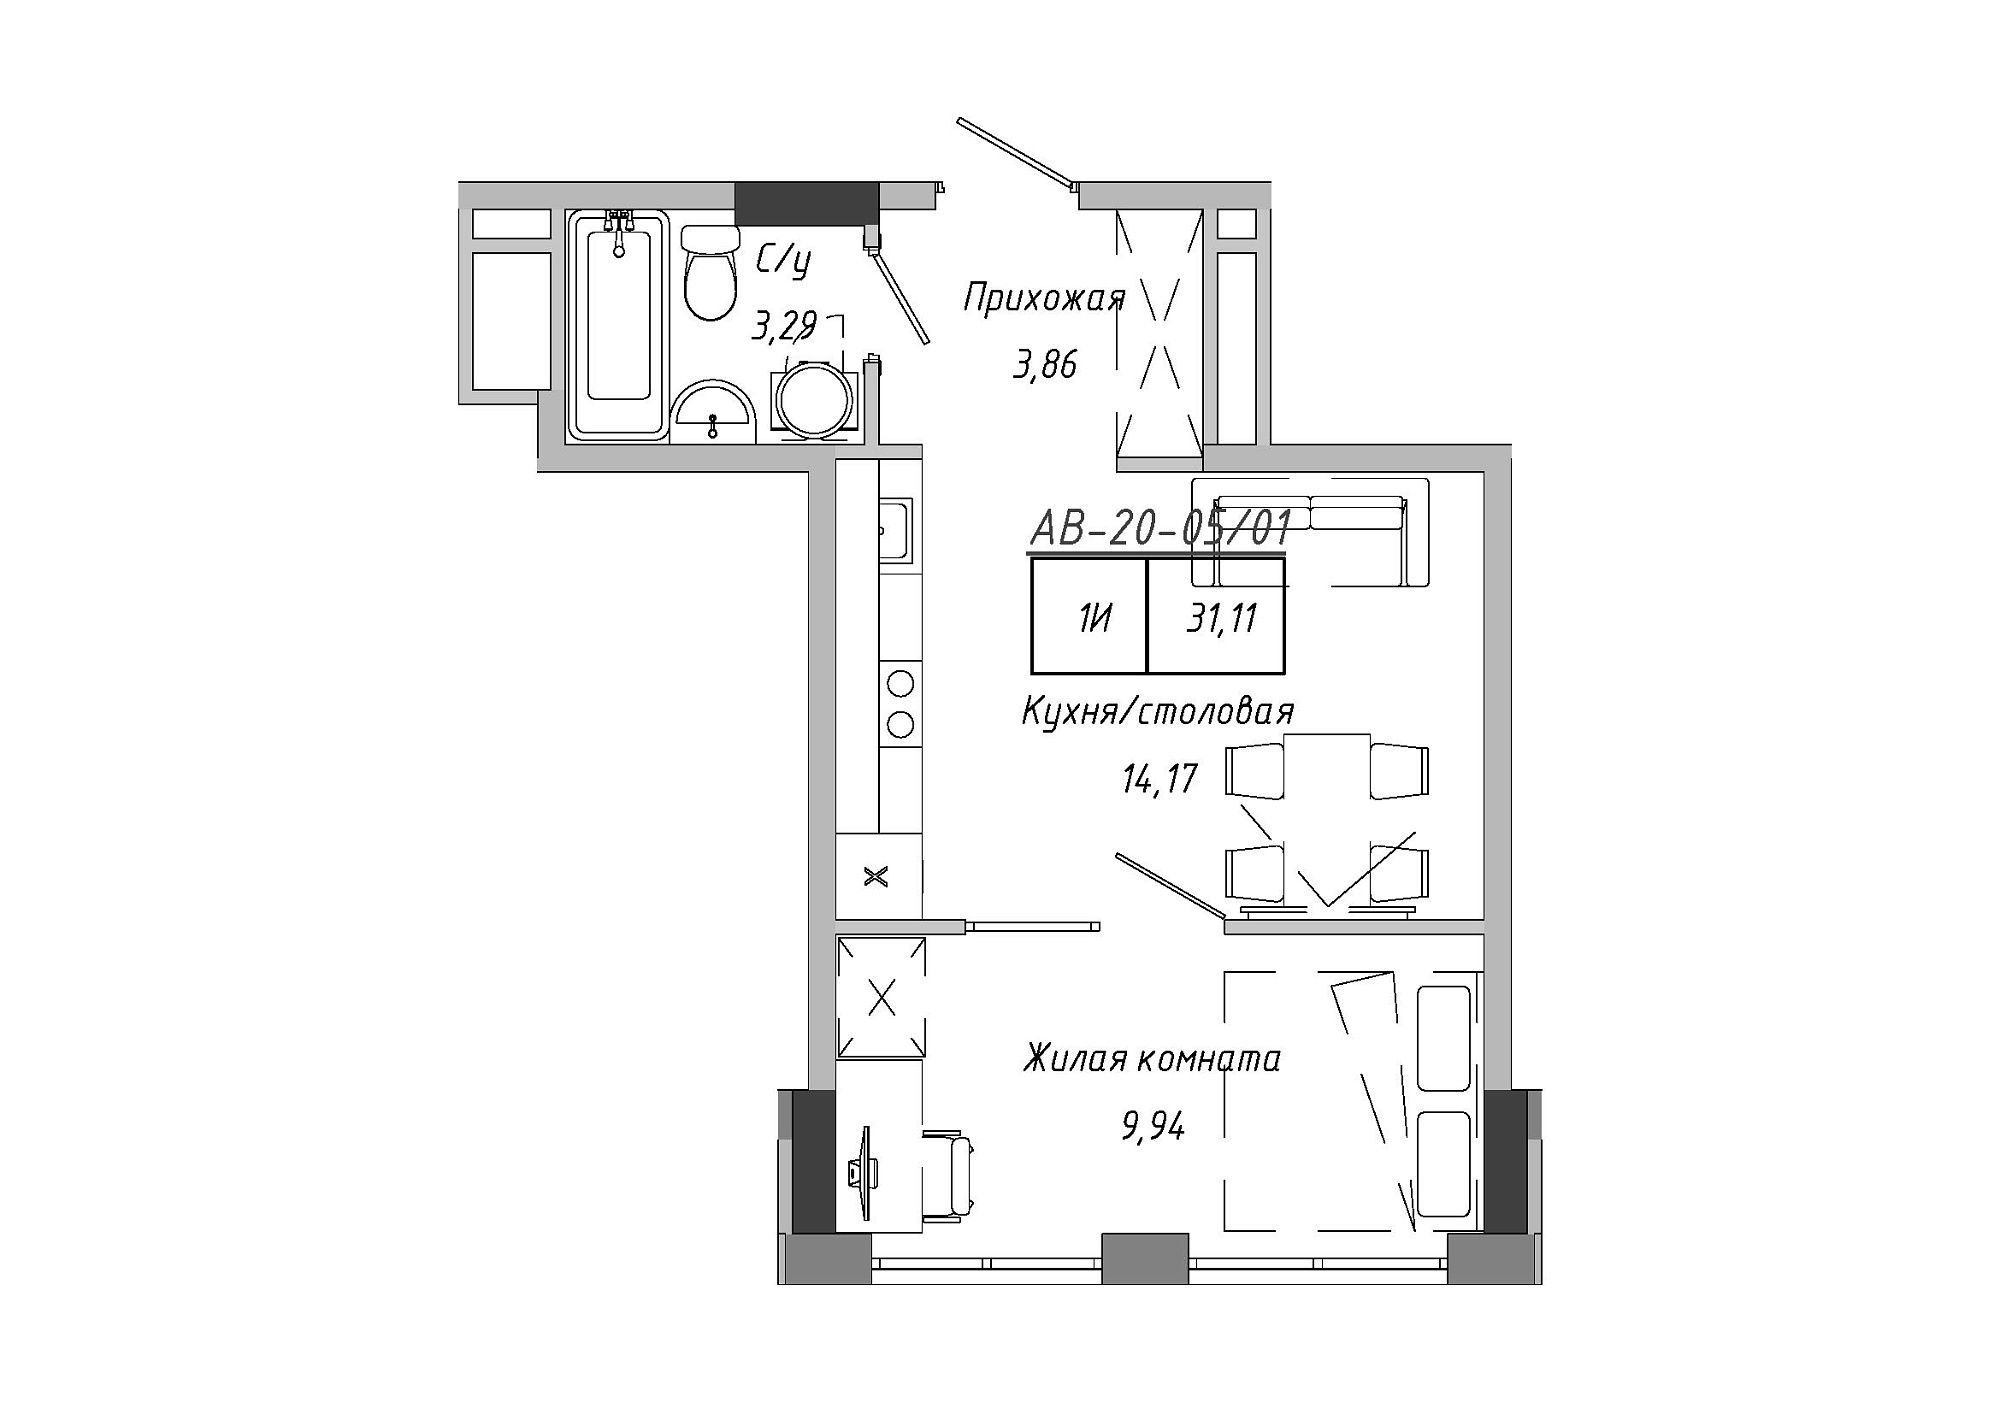 Планировка 1-к квартира площей 30.28м2, AB-20-05/00001.